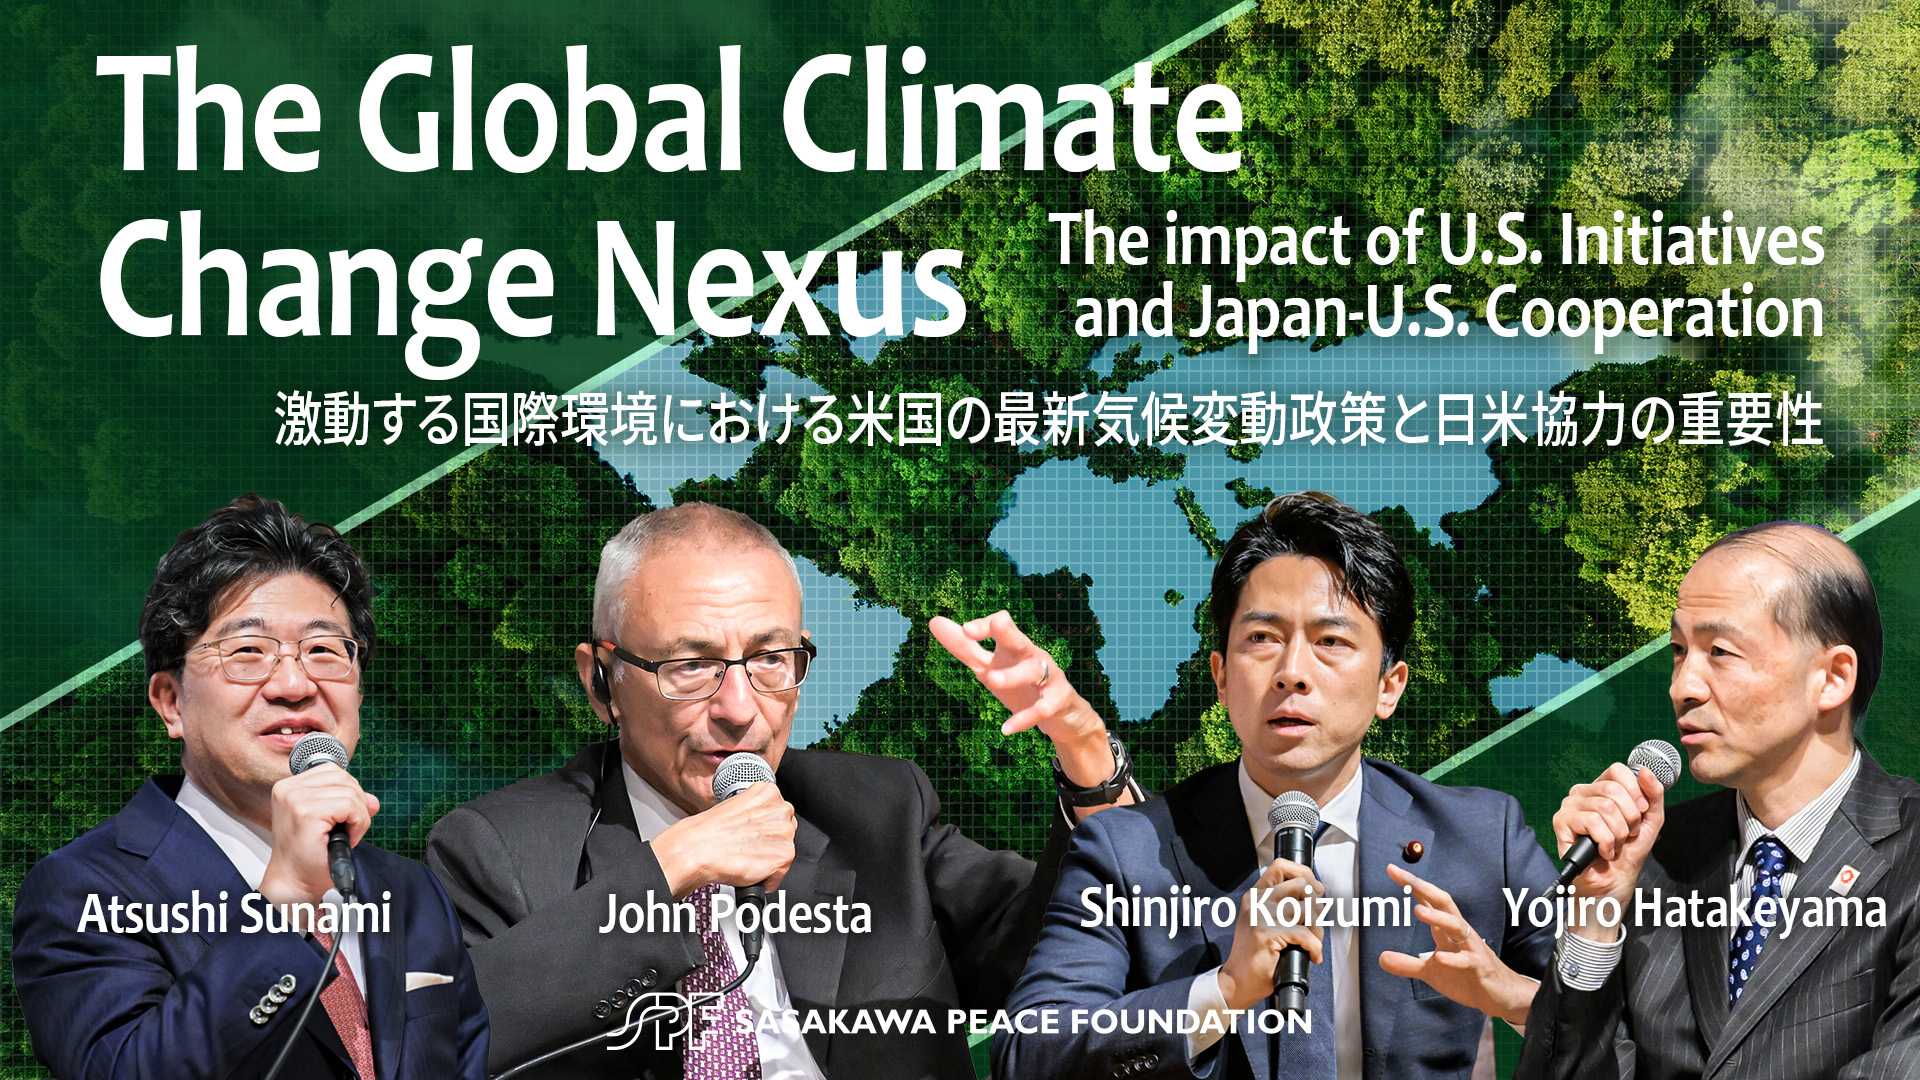 【公開イベント】The Global Climate Change Nexus　激動する国際環境における米国の最新気候変動政策と日米協力の重要性